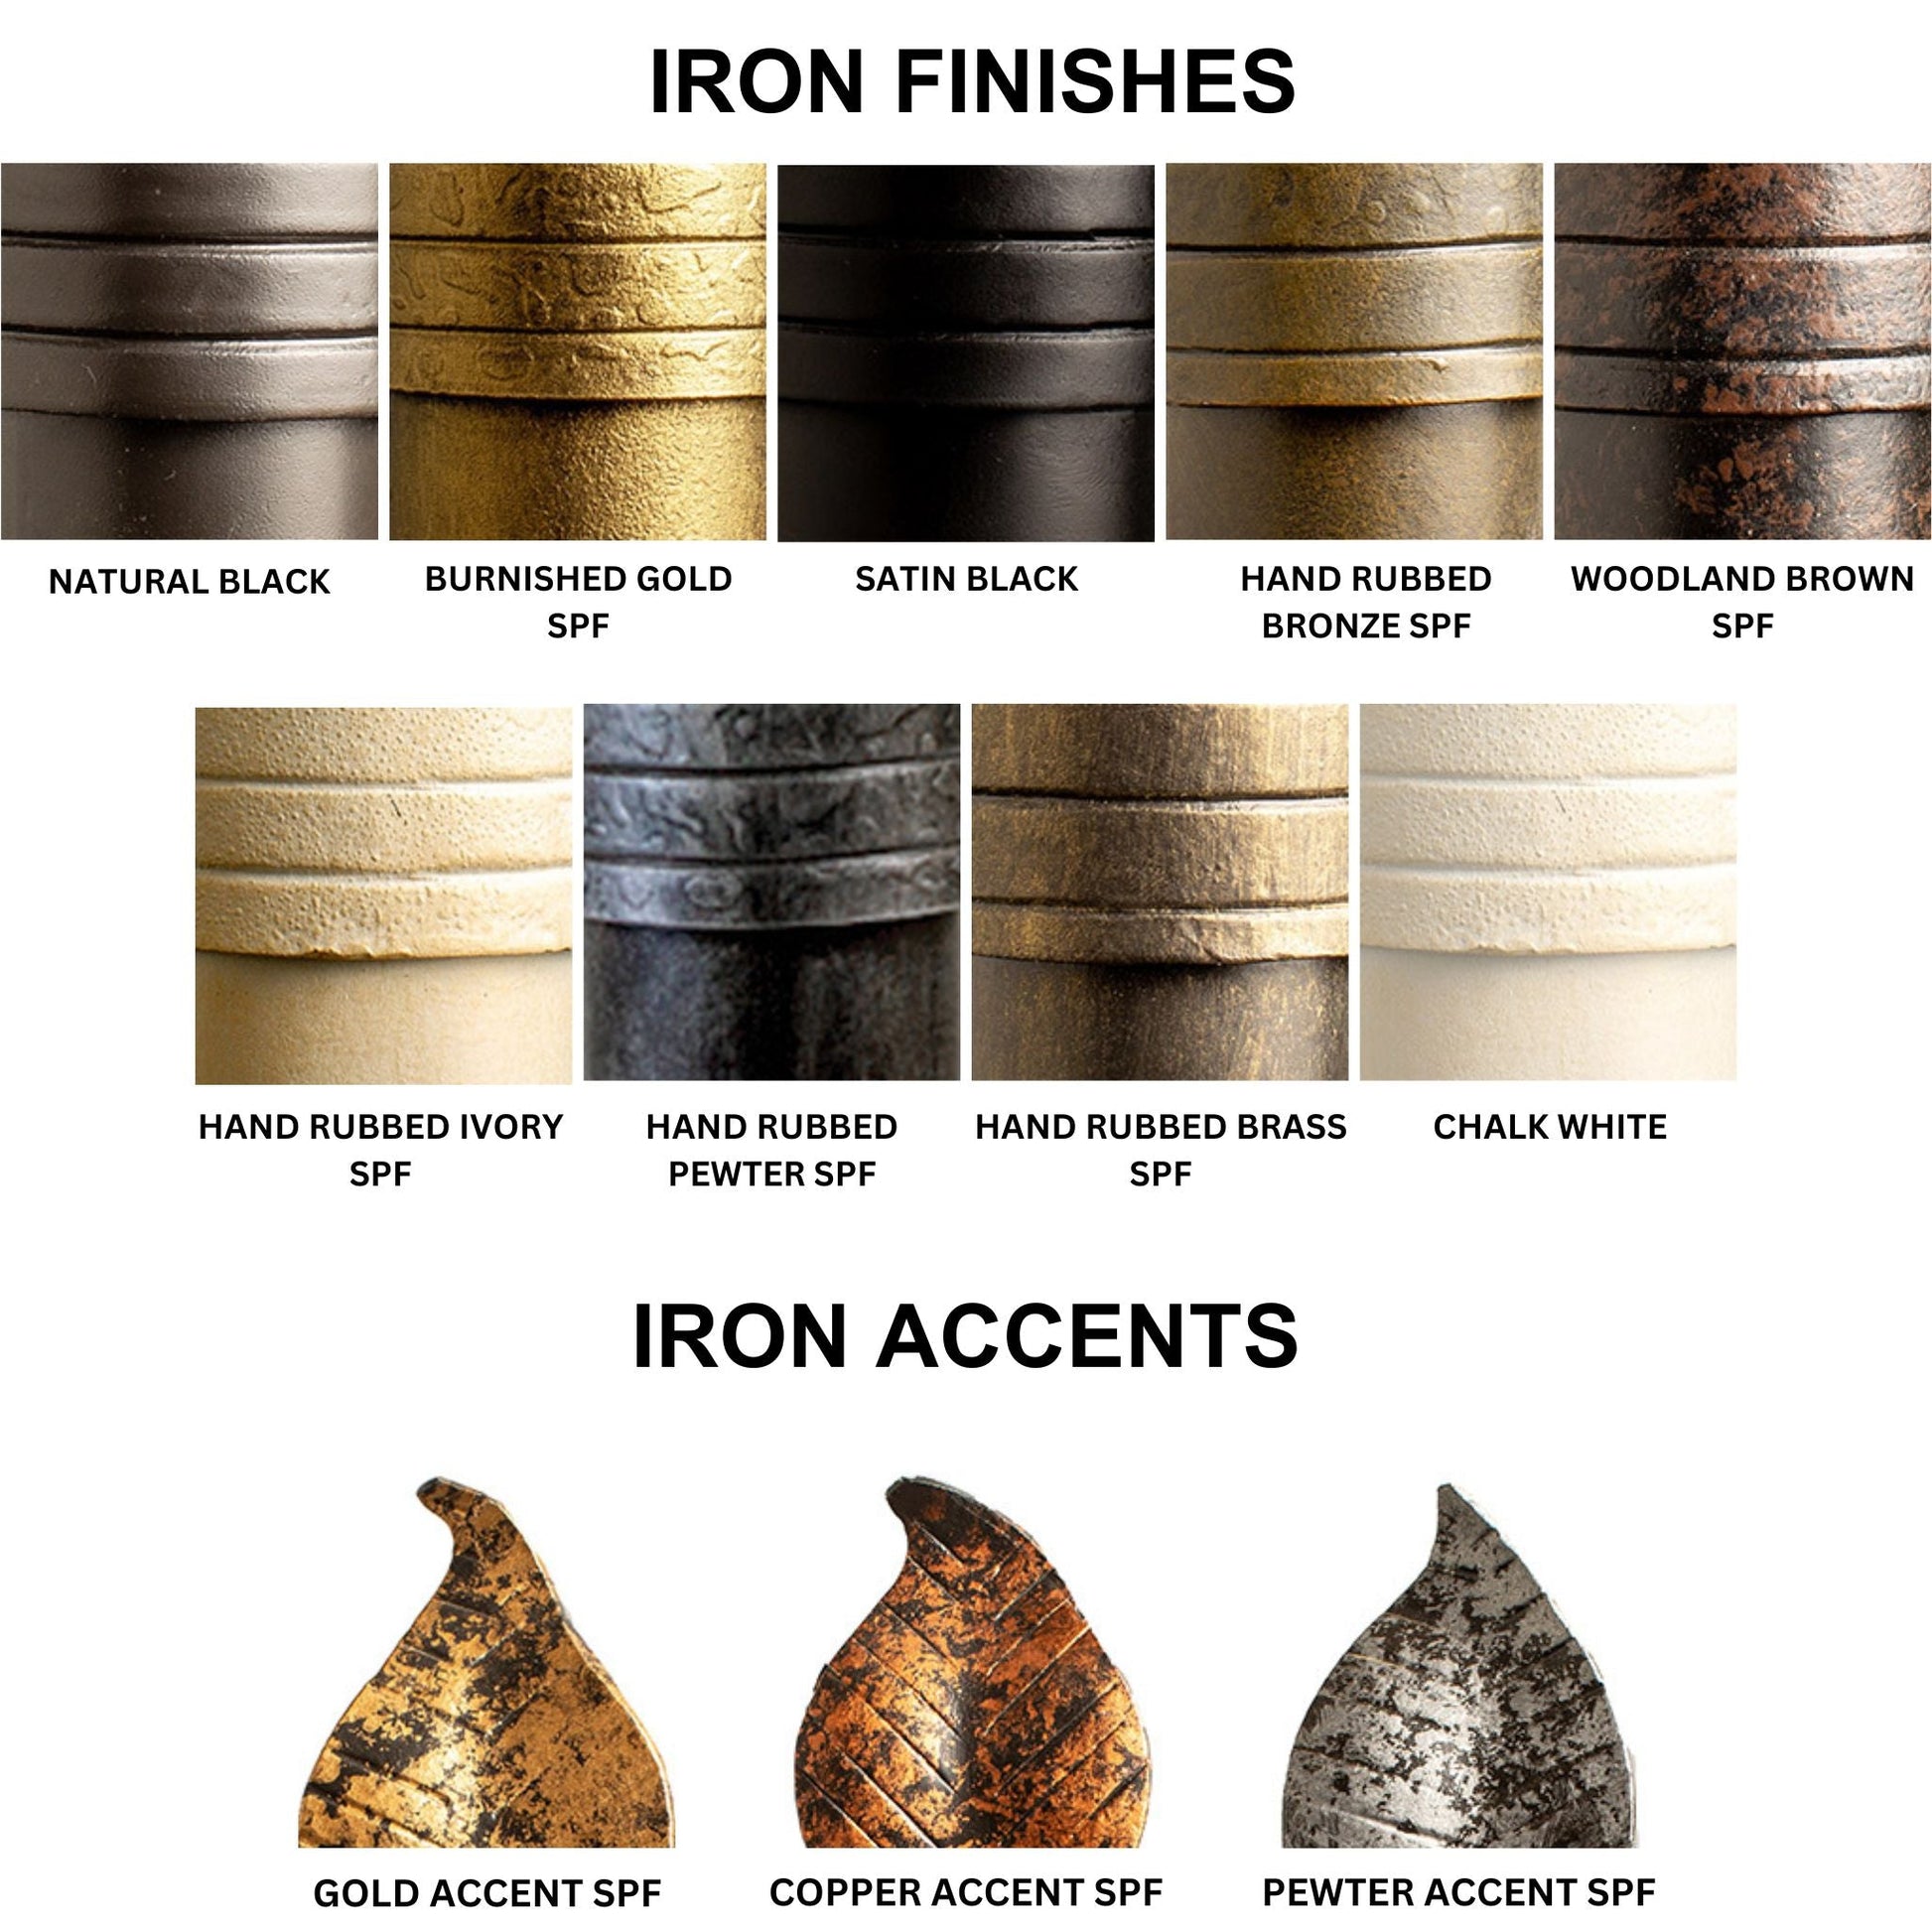 Stone County Ironworks Sassafras 24" Burnished Gold Iron Towel Bar